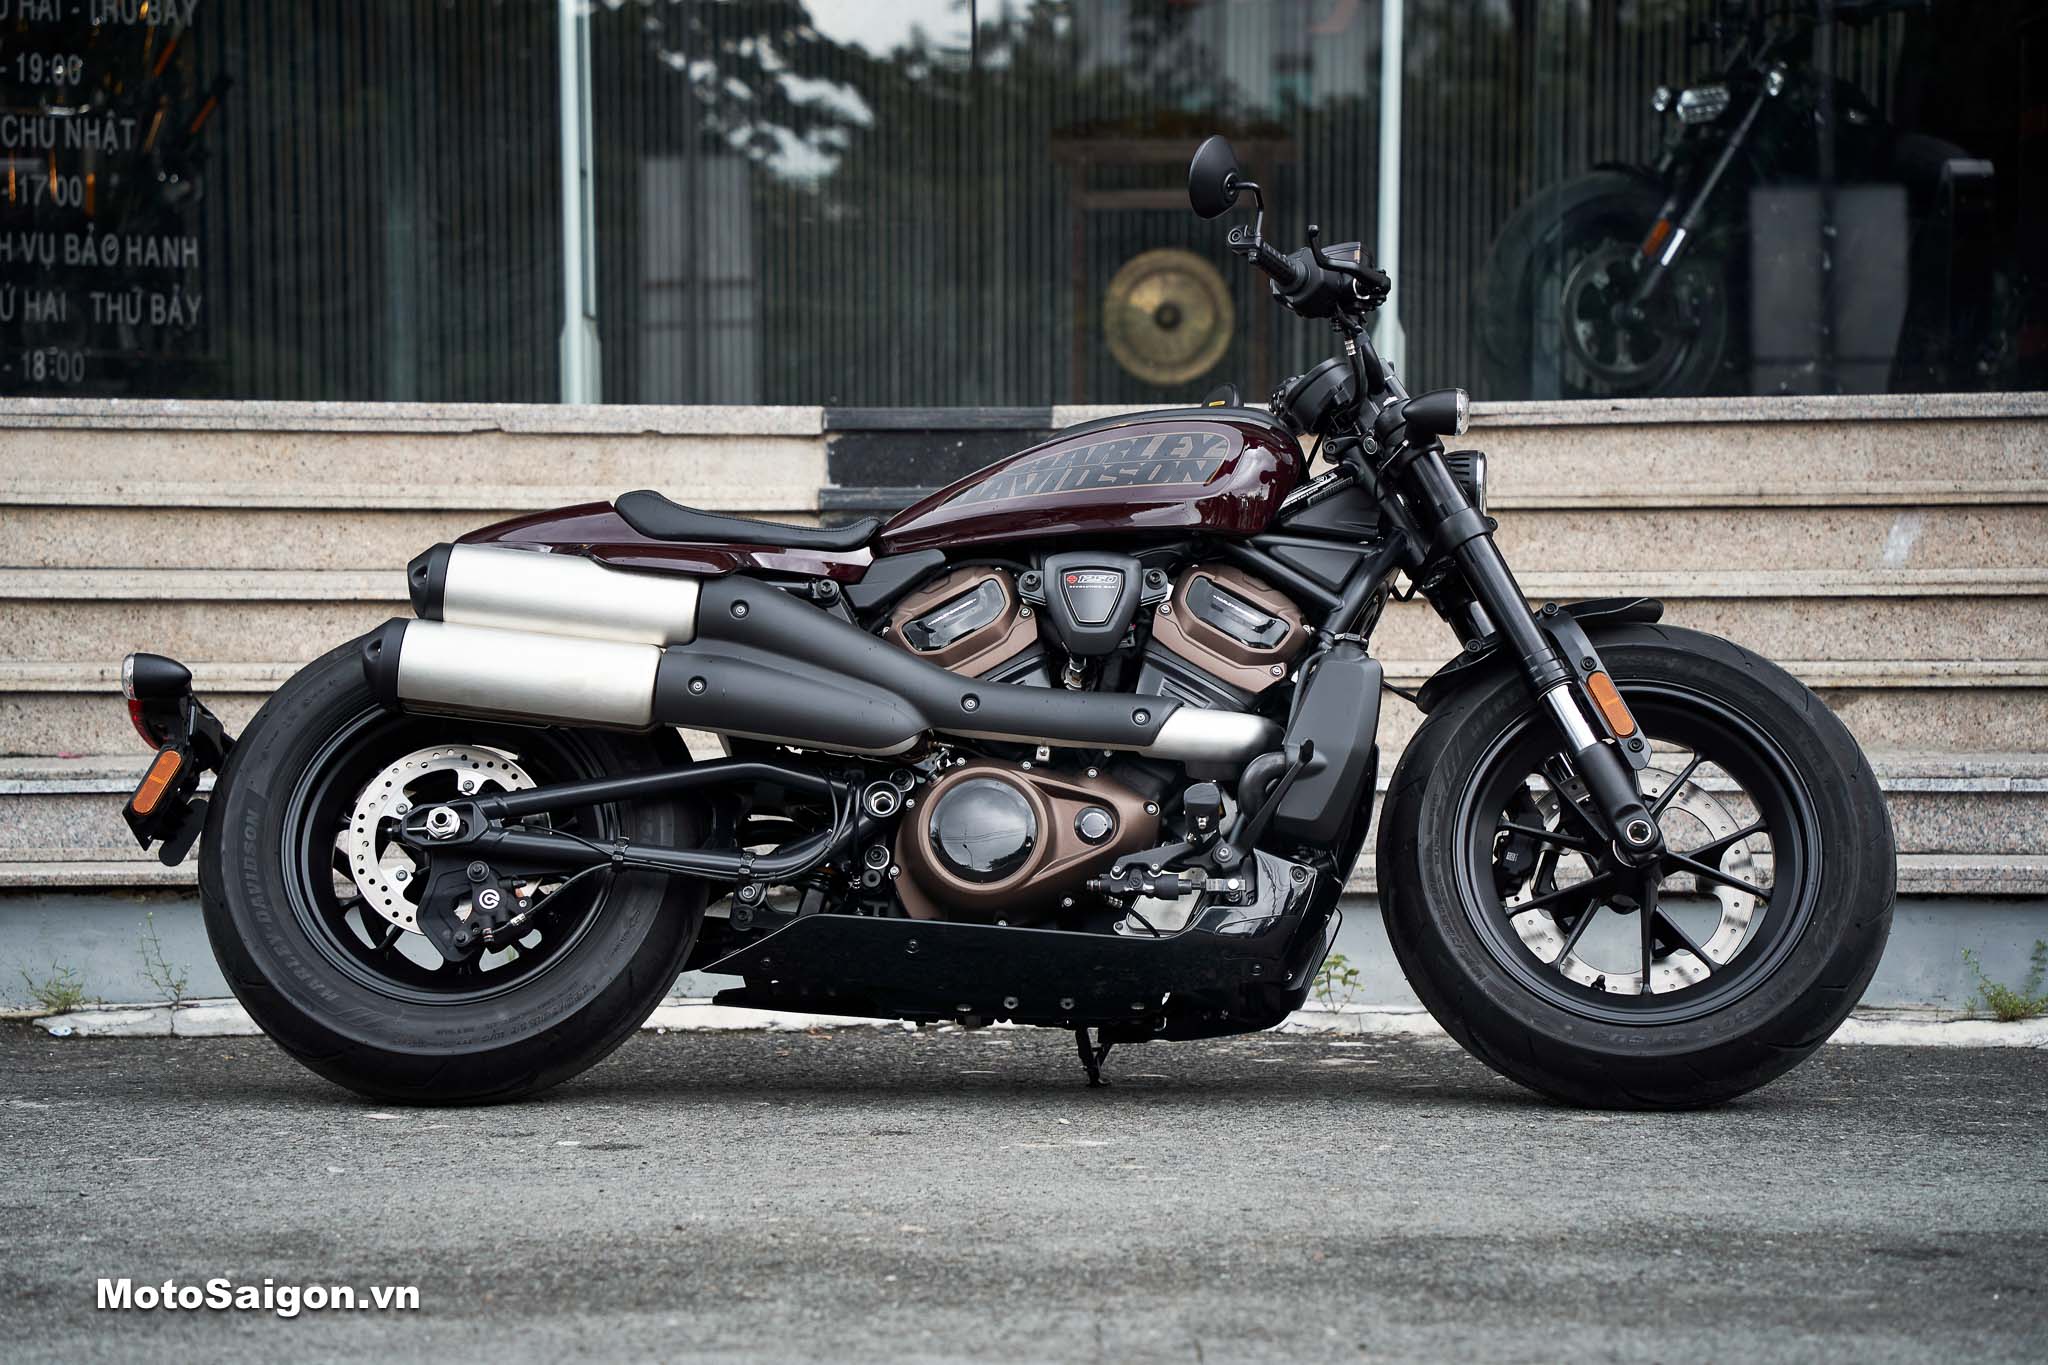 2021 HarleyDavidson Sportster S First Ride Review Rider Magazine